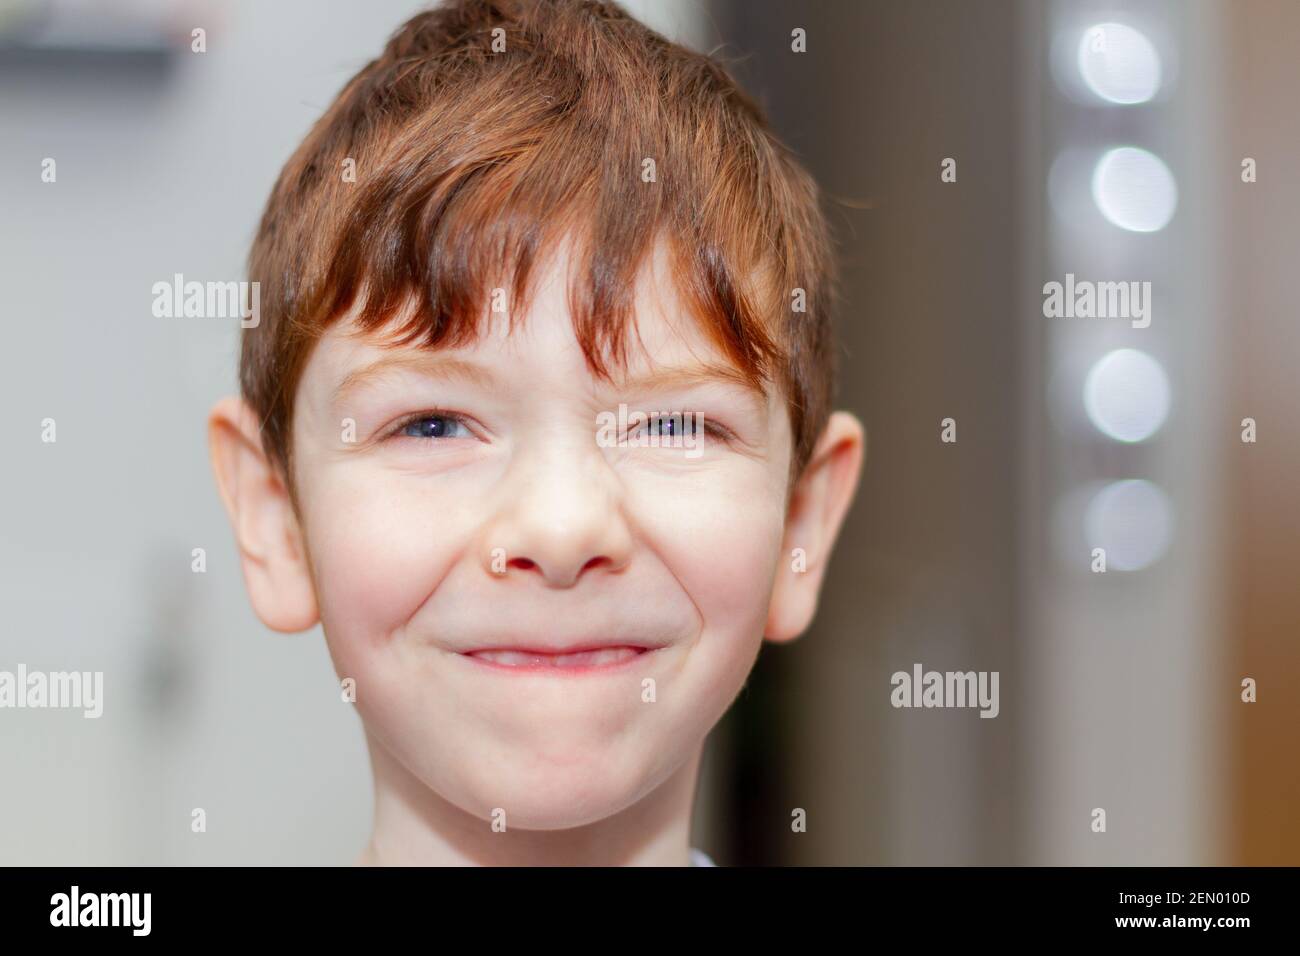 Sorriso del bambino immagini e fotografie stock ad alta risoluzione - Alamy